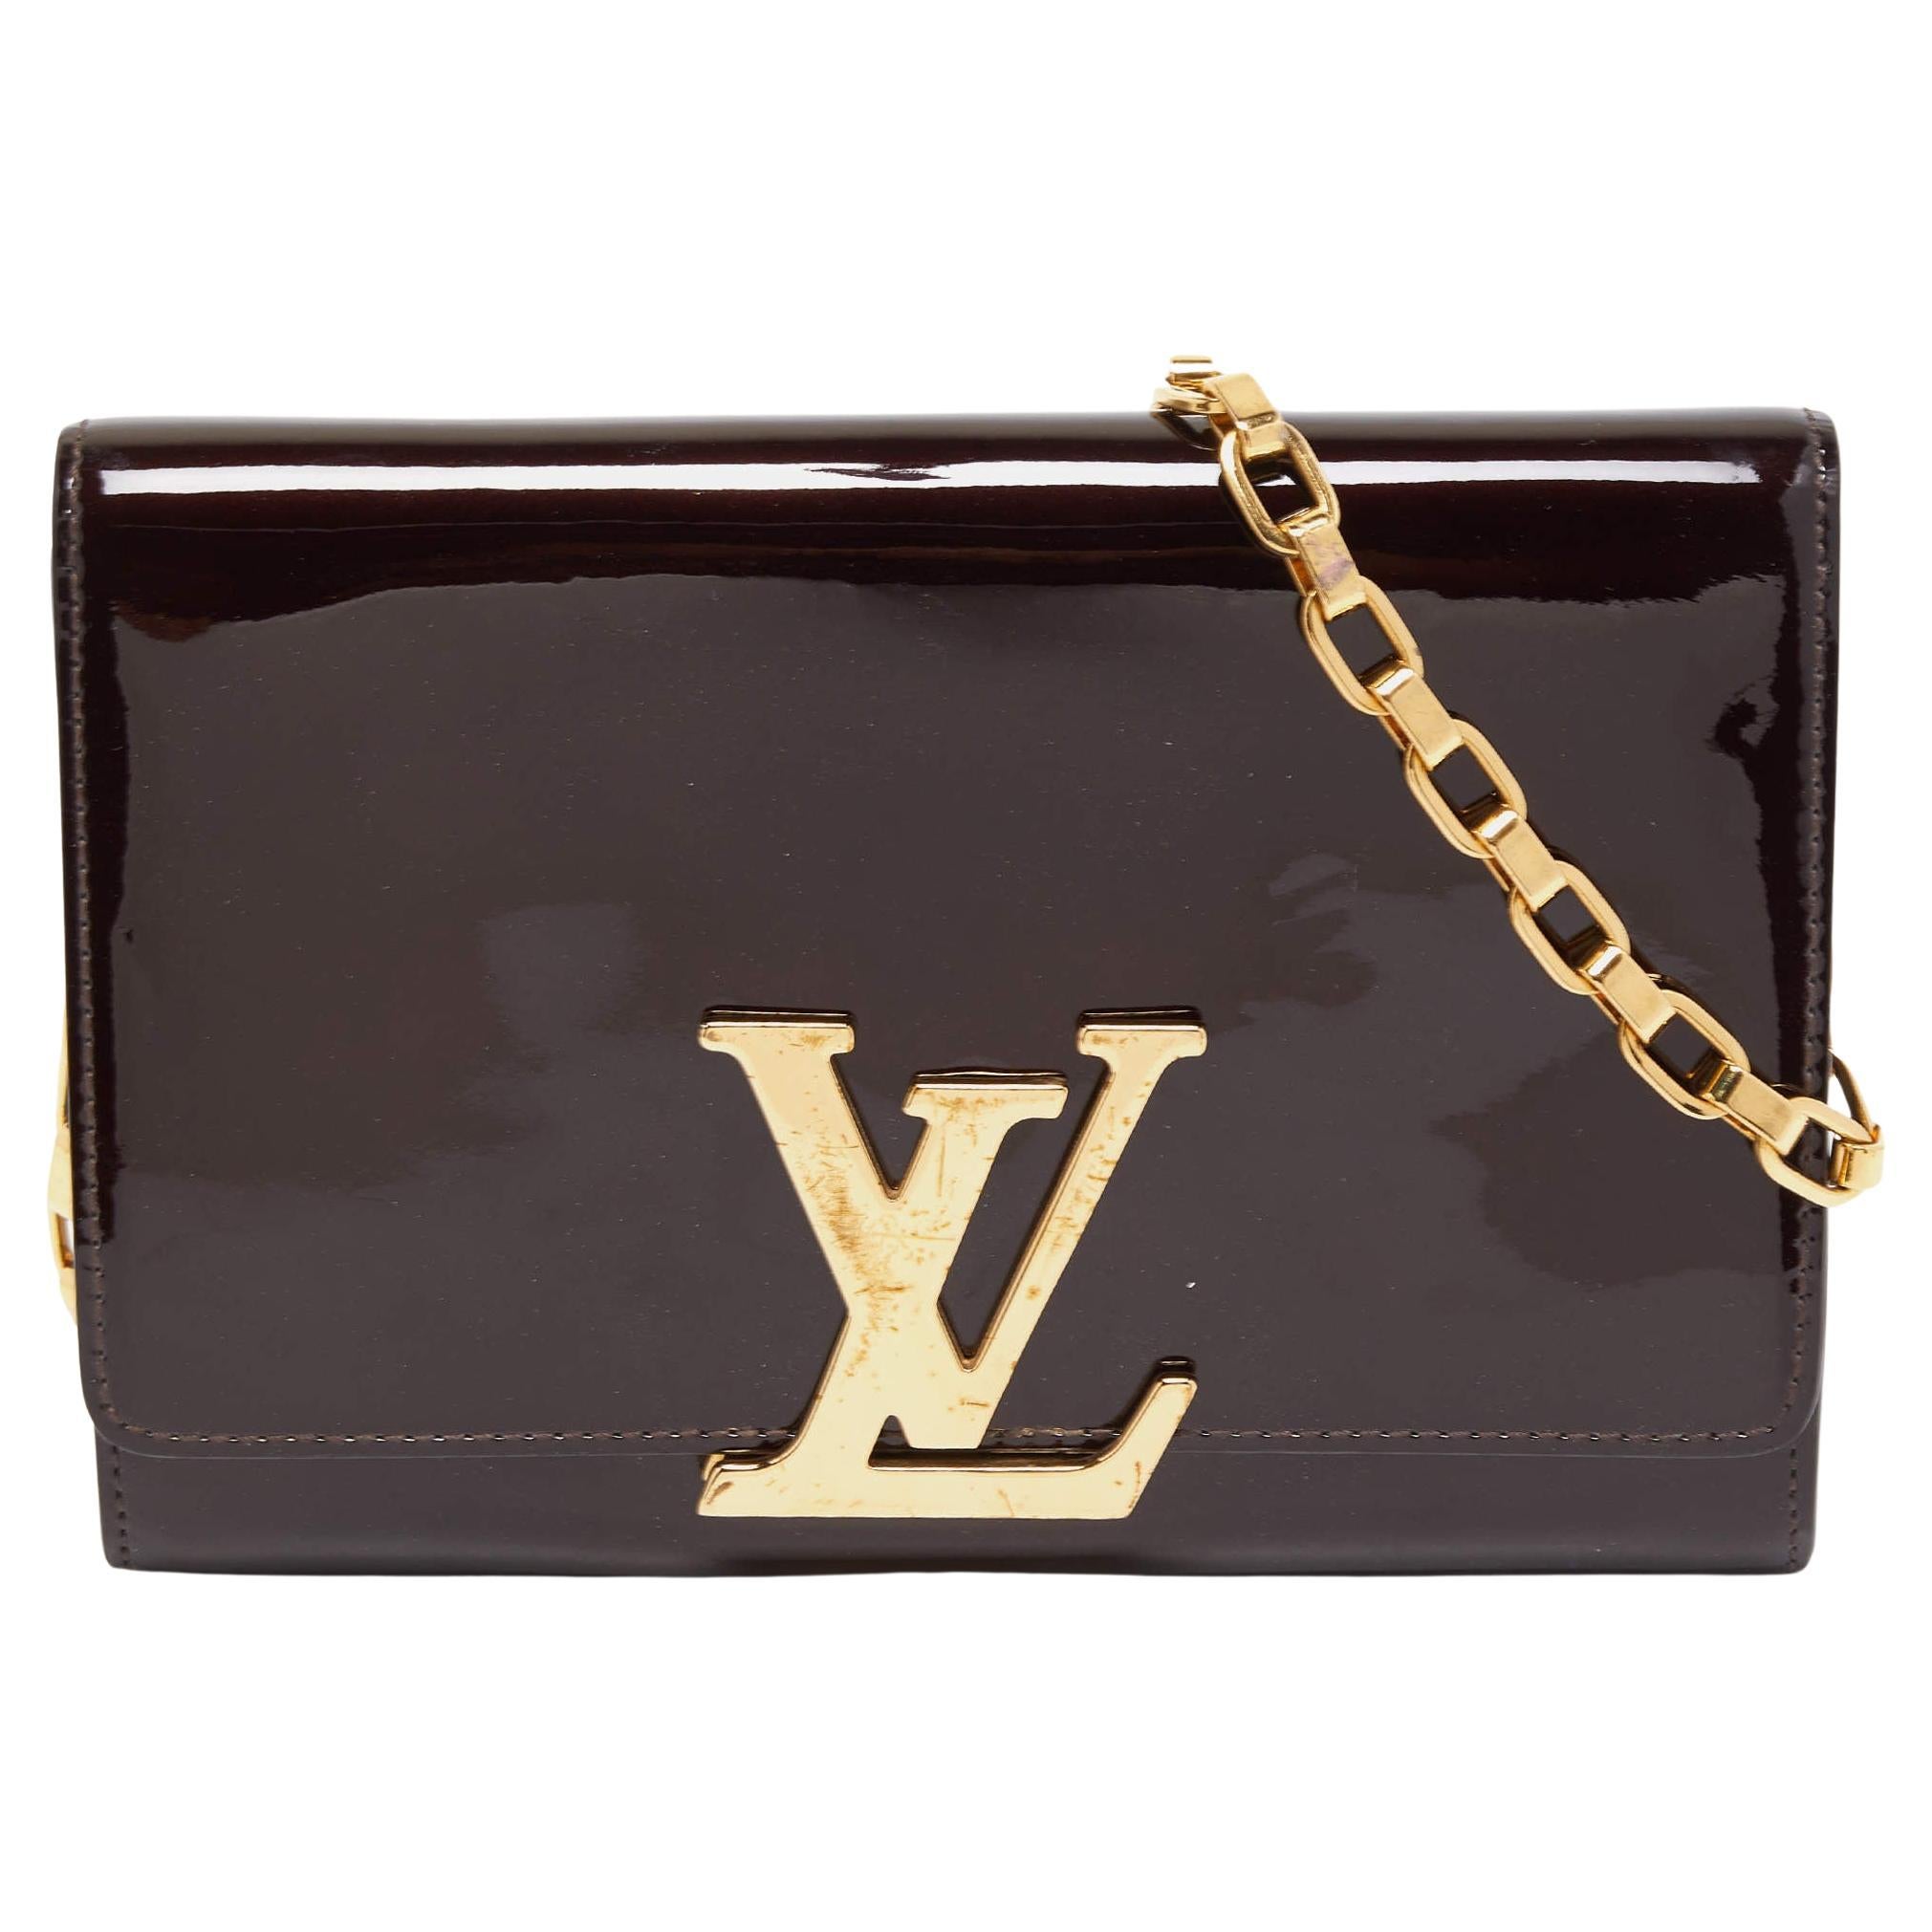 Louis Vuitton Amarante Vernis Chain Louise GM Bag